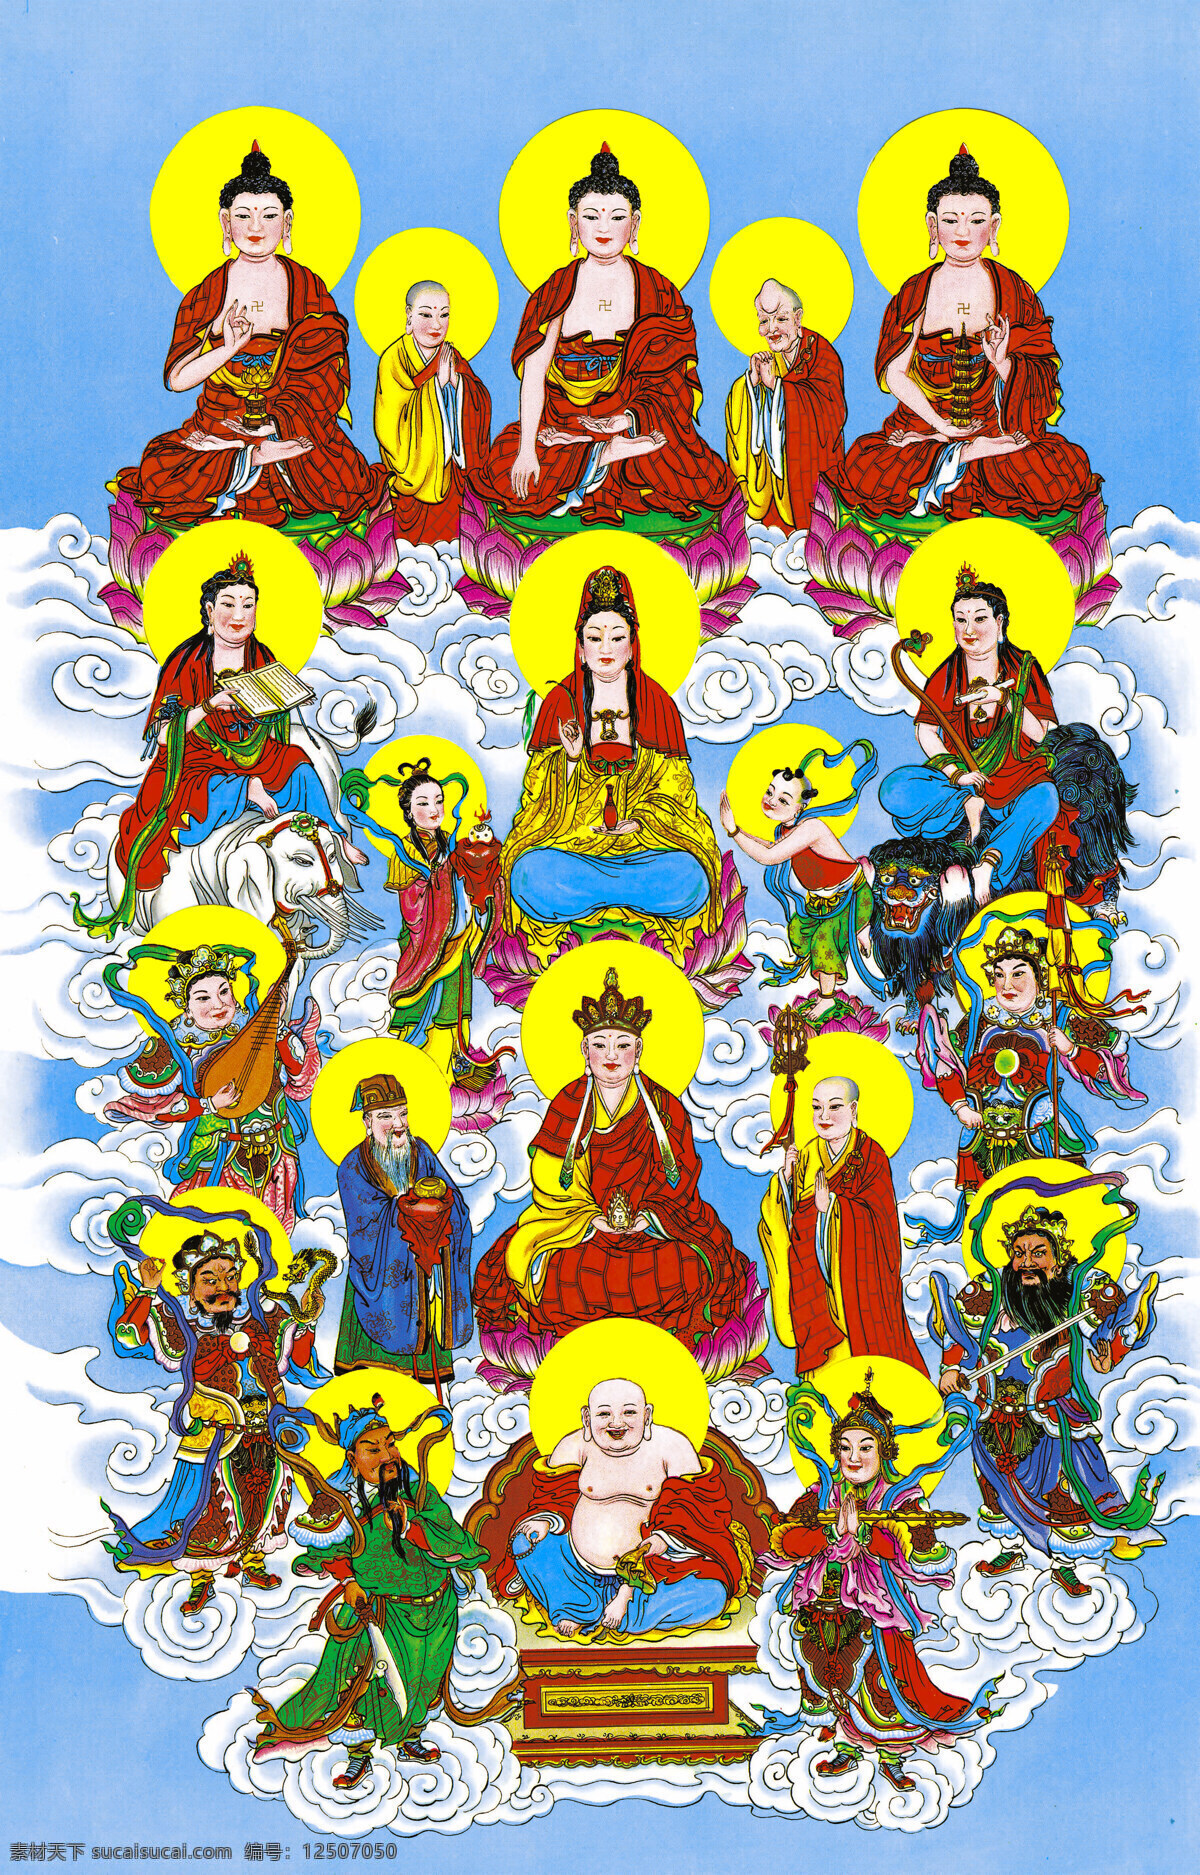 财神爷 佛教 观音菩萨 弥勒佛 菩萨 设计图库 神仙 佛教十八神佛 文化艺术 宗教信仰 十八神佛 众佛像